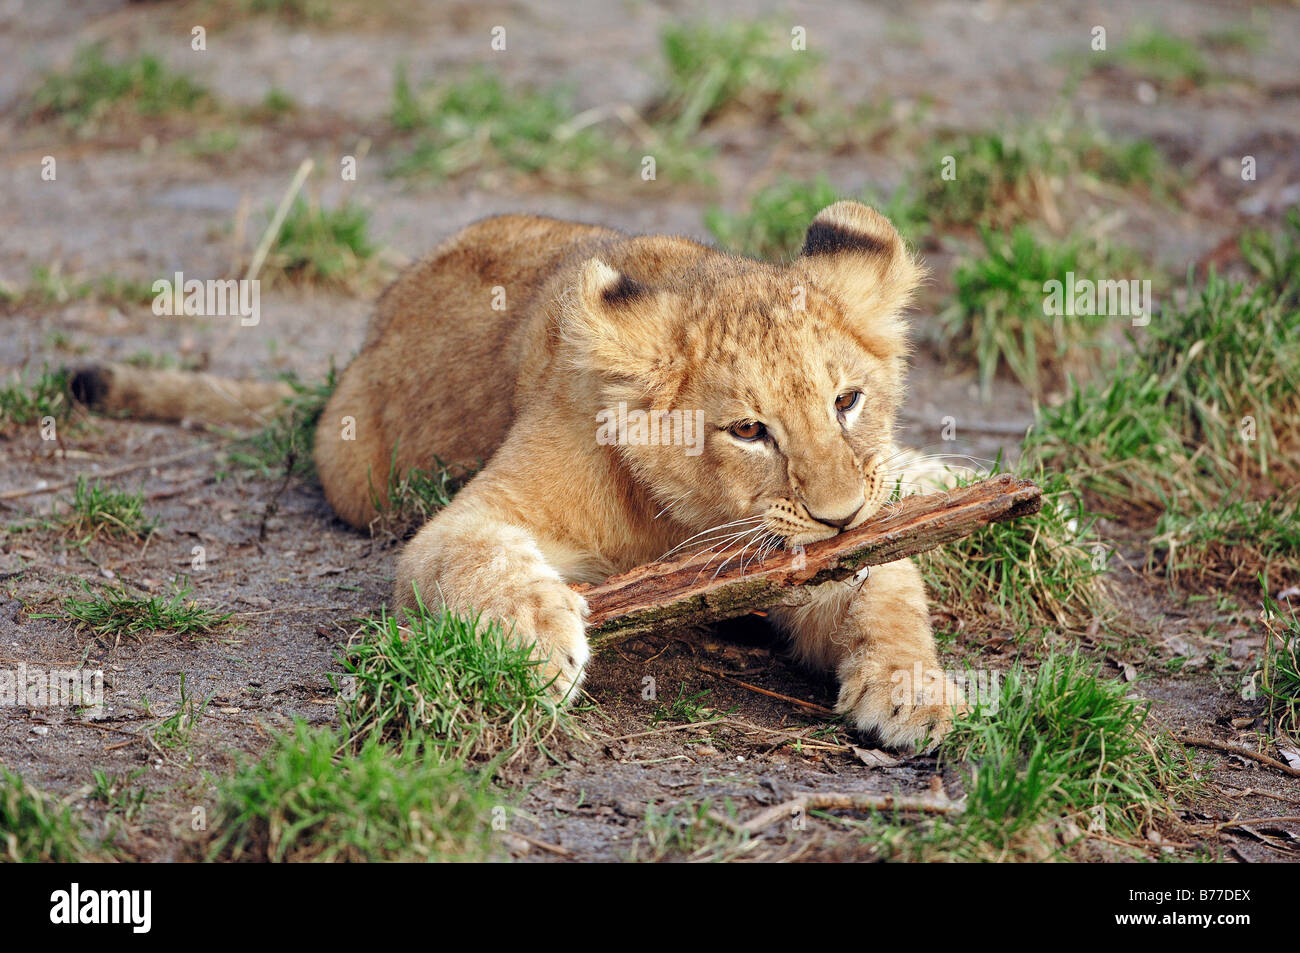 Lion (Panthera leo), cub Stock Photo